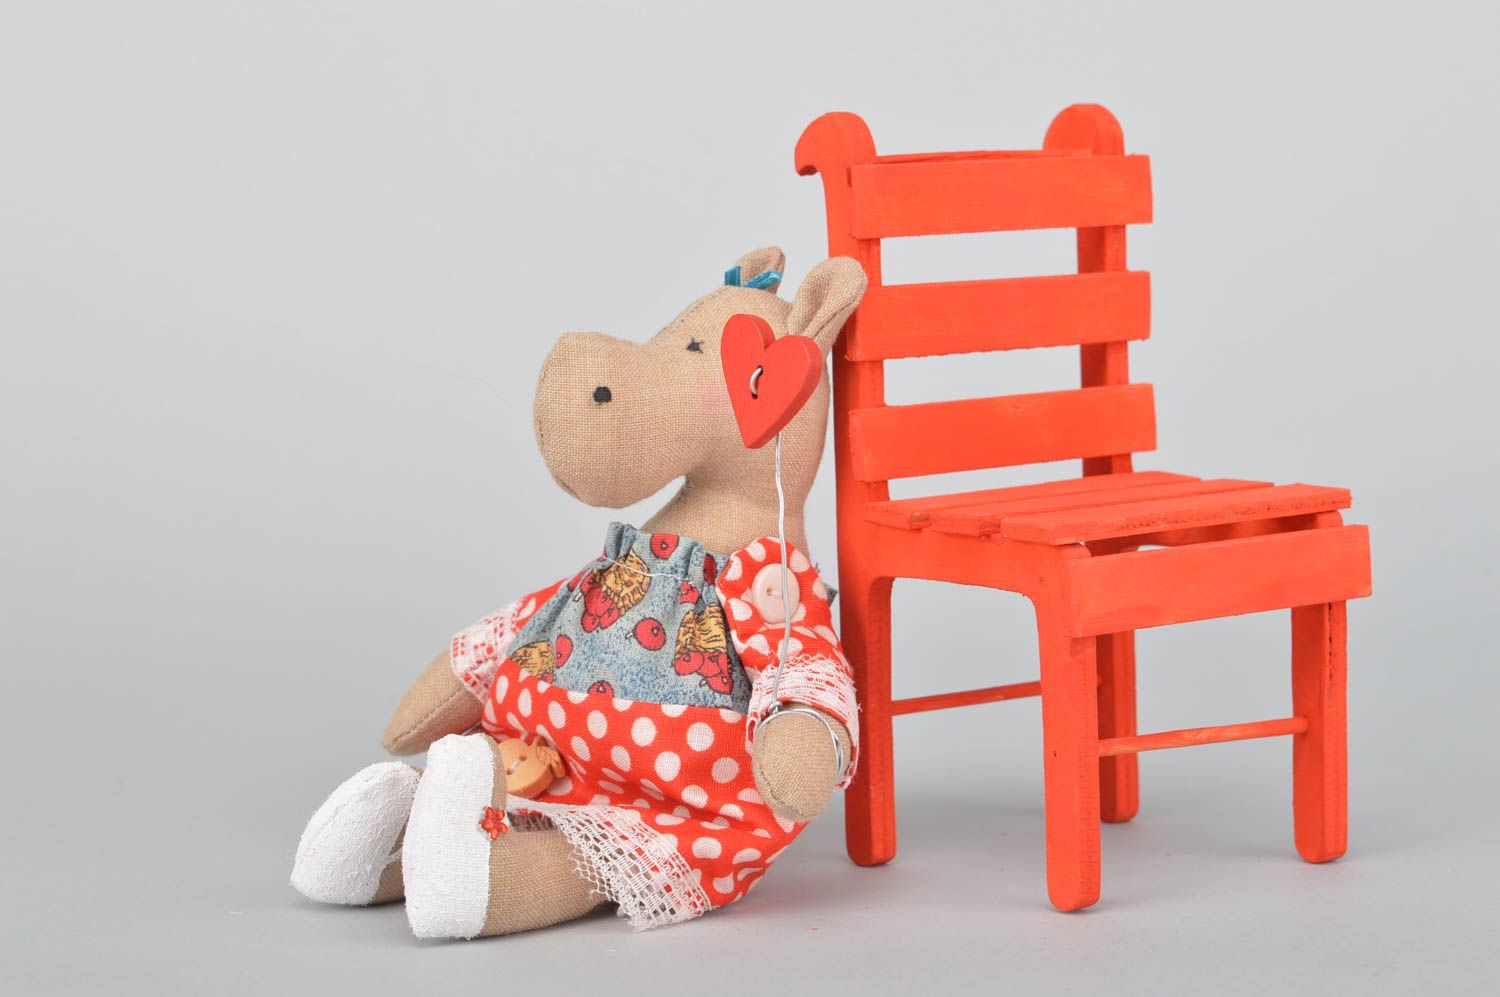 Интерьерная игрушка из хлопка ручной работы Бегемотик в платье на красном стуле фото 3